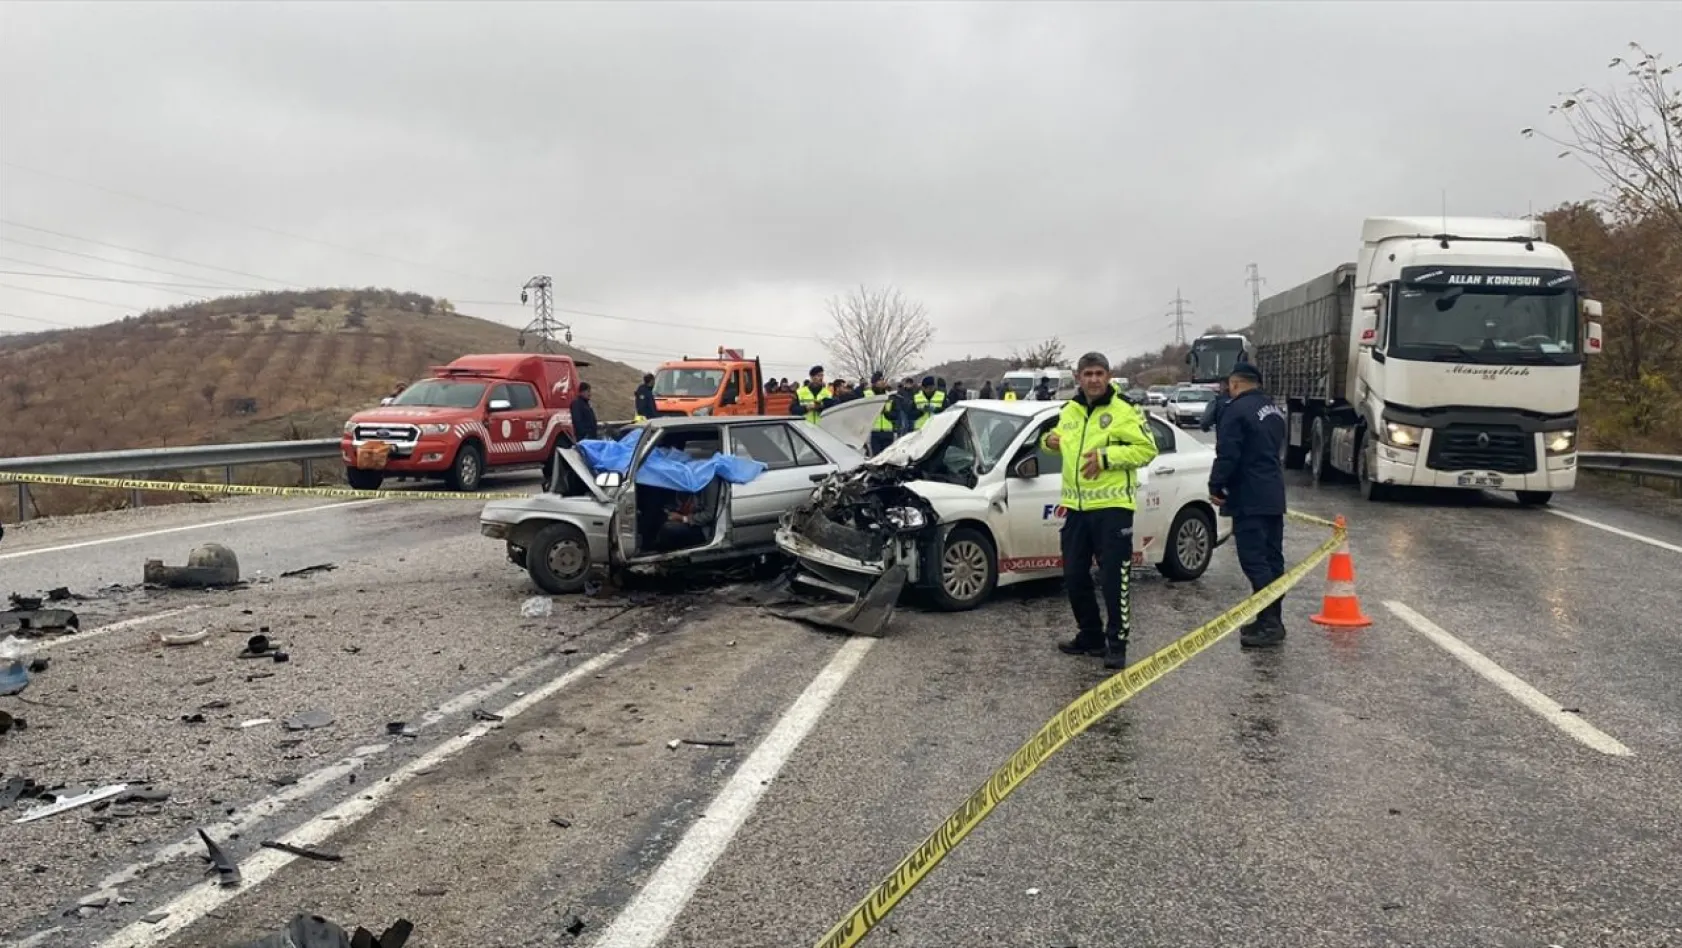 Üç aracın karıştığı kazada 2 kişi öldü, 2 kişi yaralandı